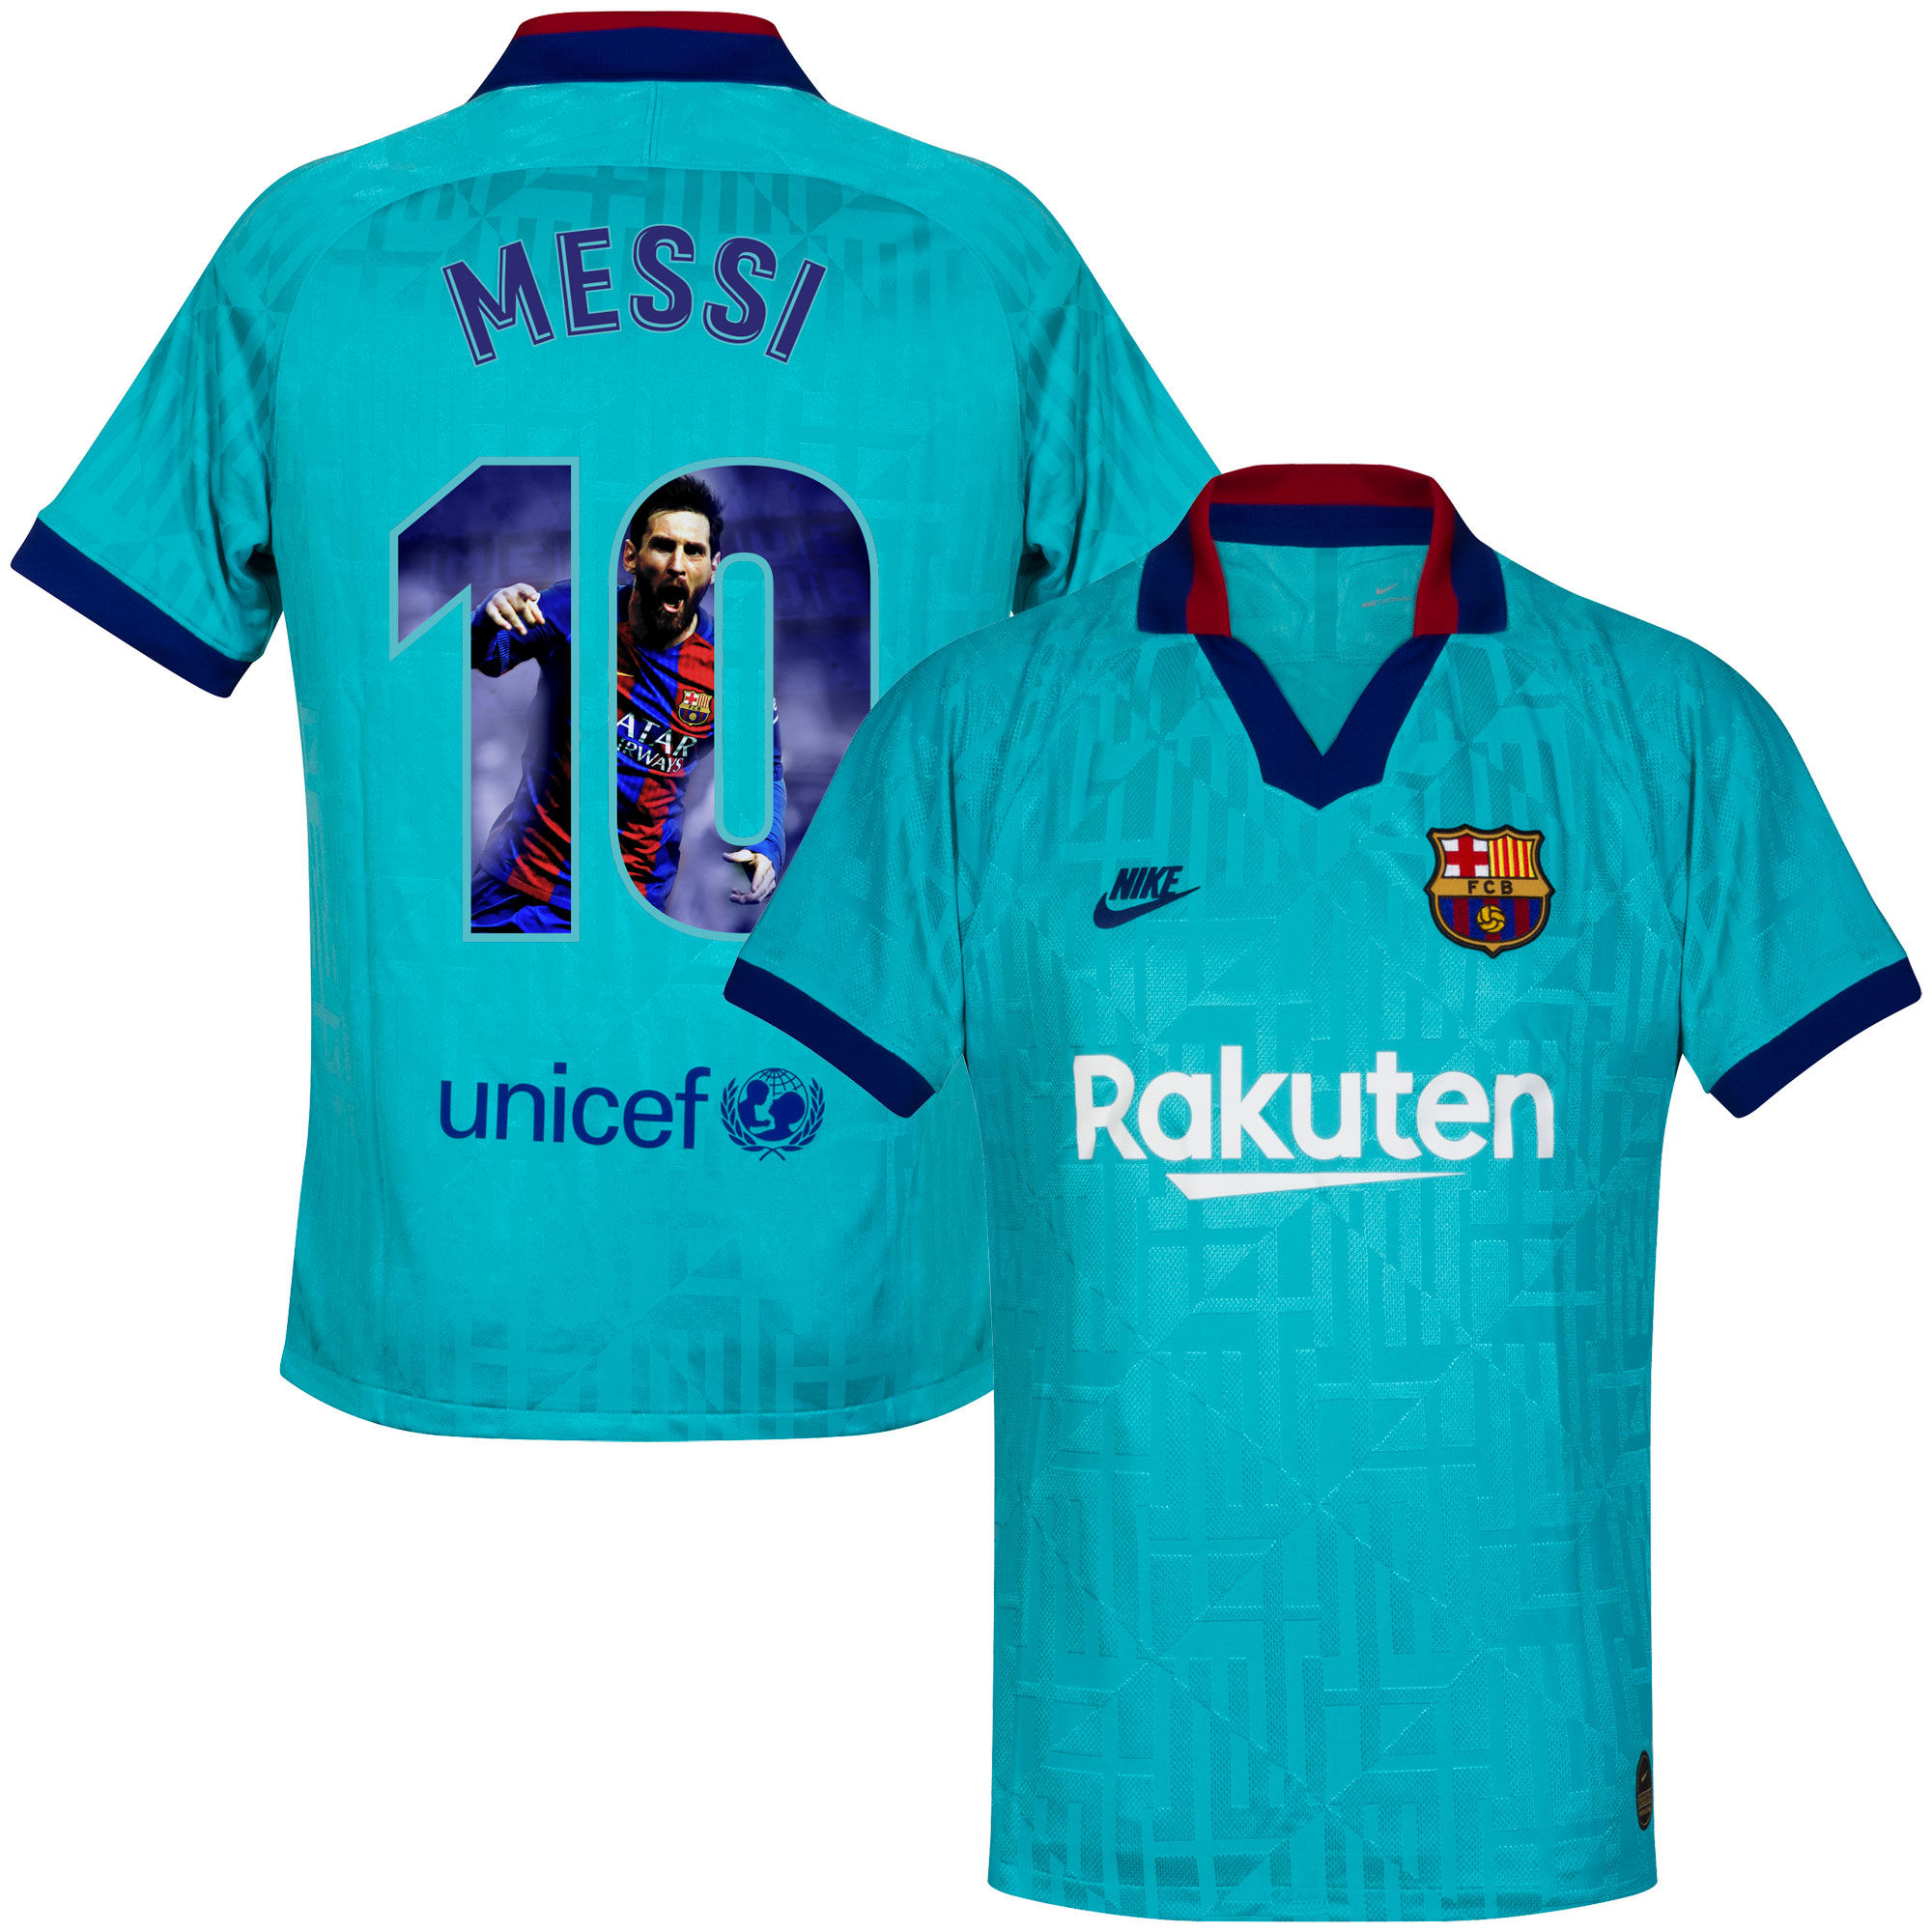 Barcelona - Dres fotbalový - sezóna 2019/20, třetí sada, číslo 10, modrý, Lionel Messi, potisk s obrázkem